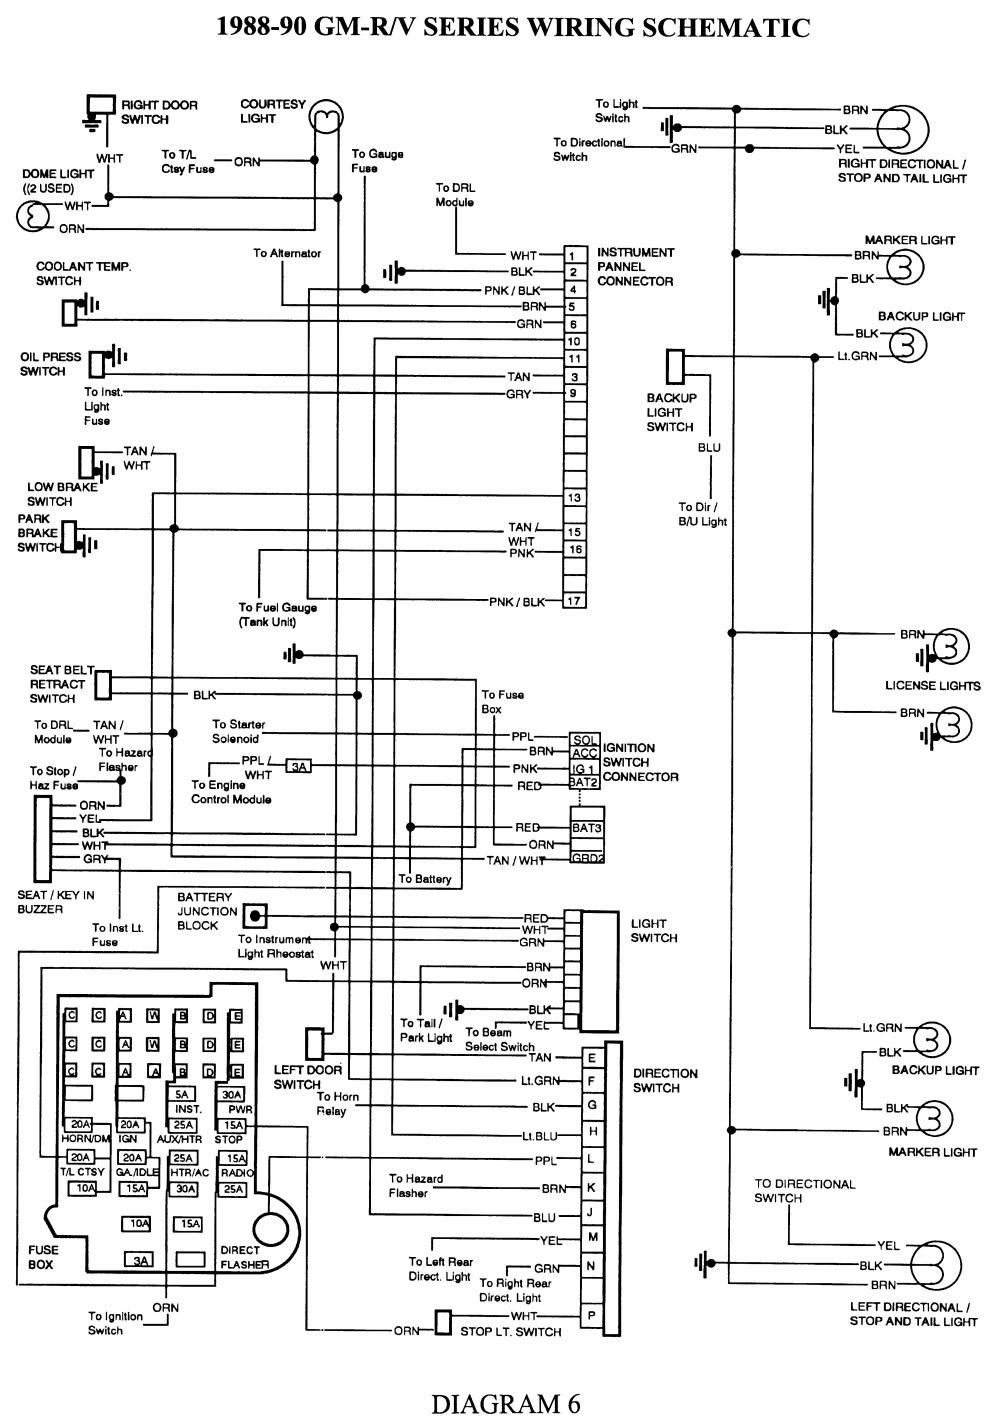 Repair Guides Wiring Diagrams Wiring Diagrams Autozone 1998 Chevrolet C1500 Wiring Diagram 3 1998 Chevrolet C1500 Wiring Diagram